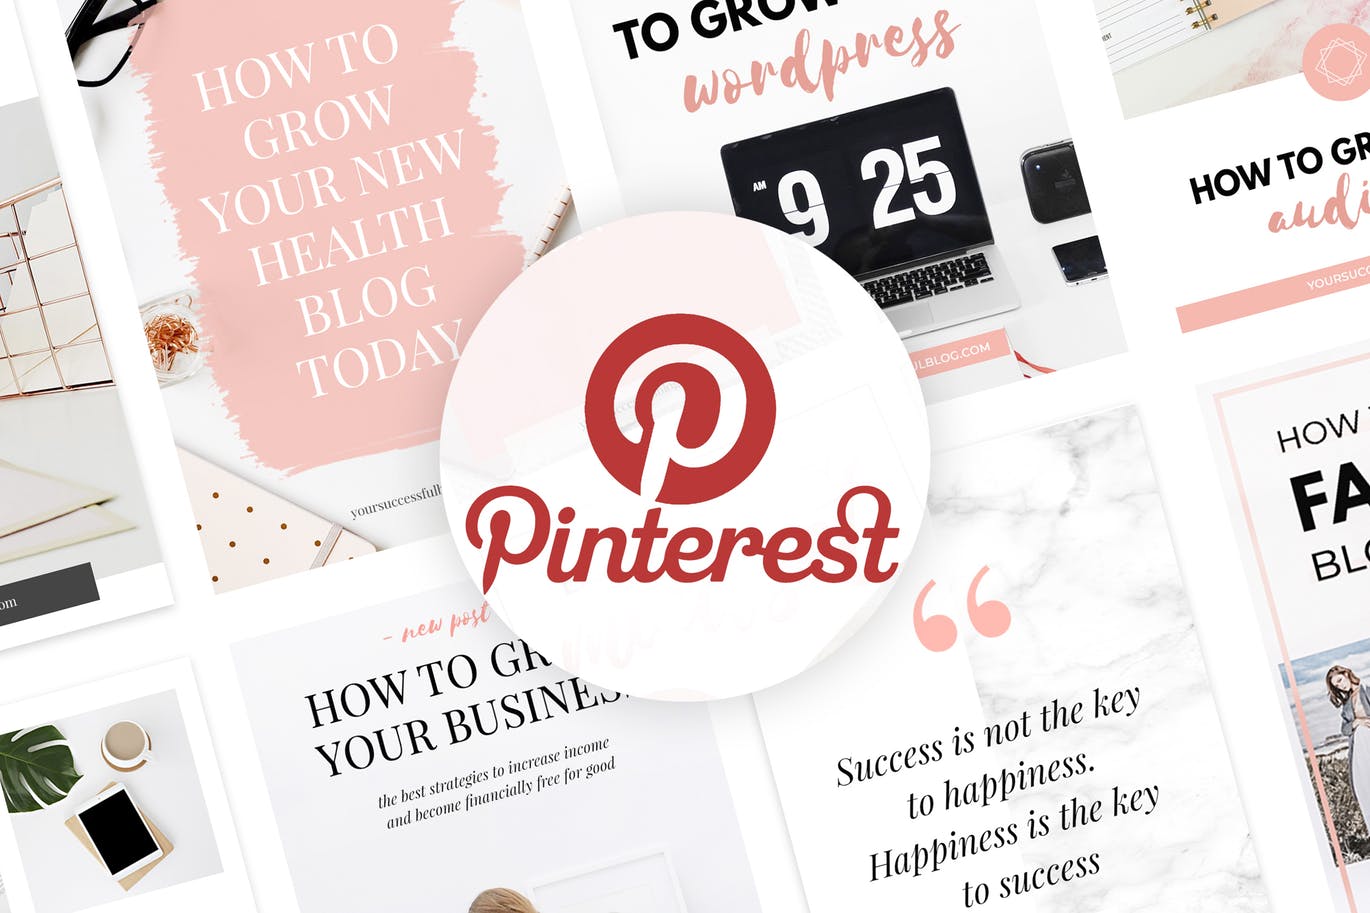 10款粉色主题Pinterest社交贴图广告设计模板第一素材精选v2 Canva Pinterest Templates V.2插图(3)